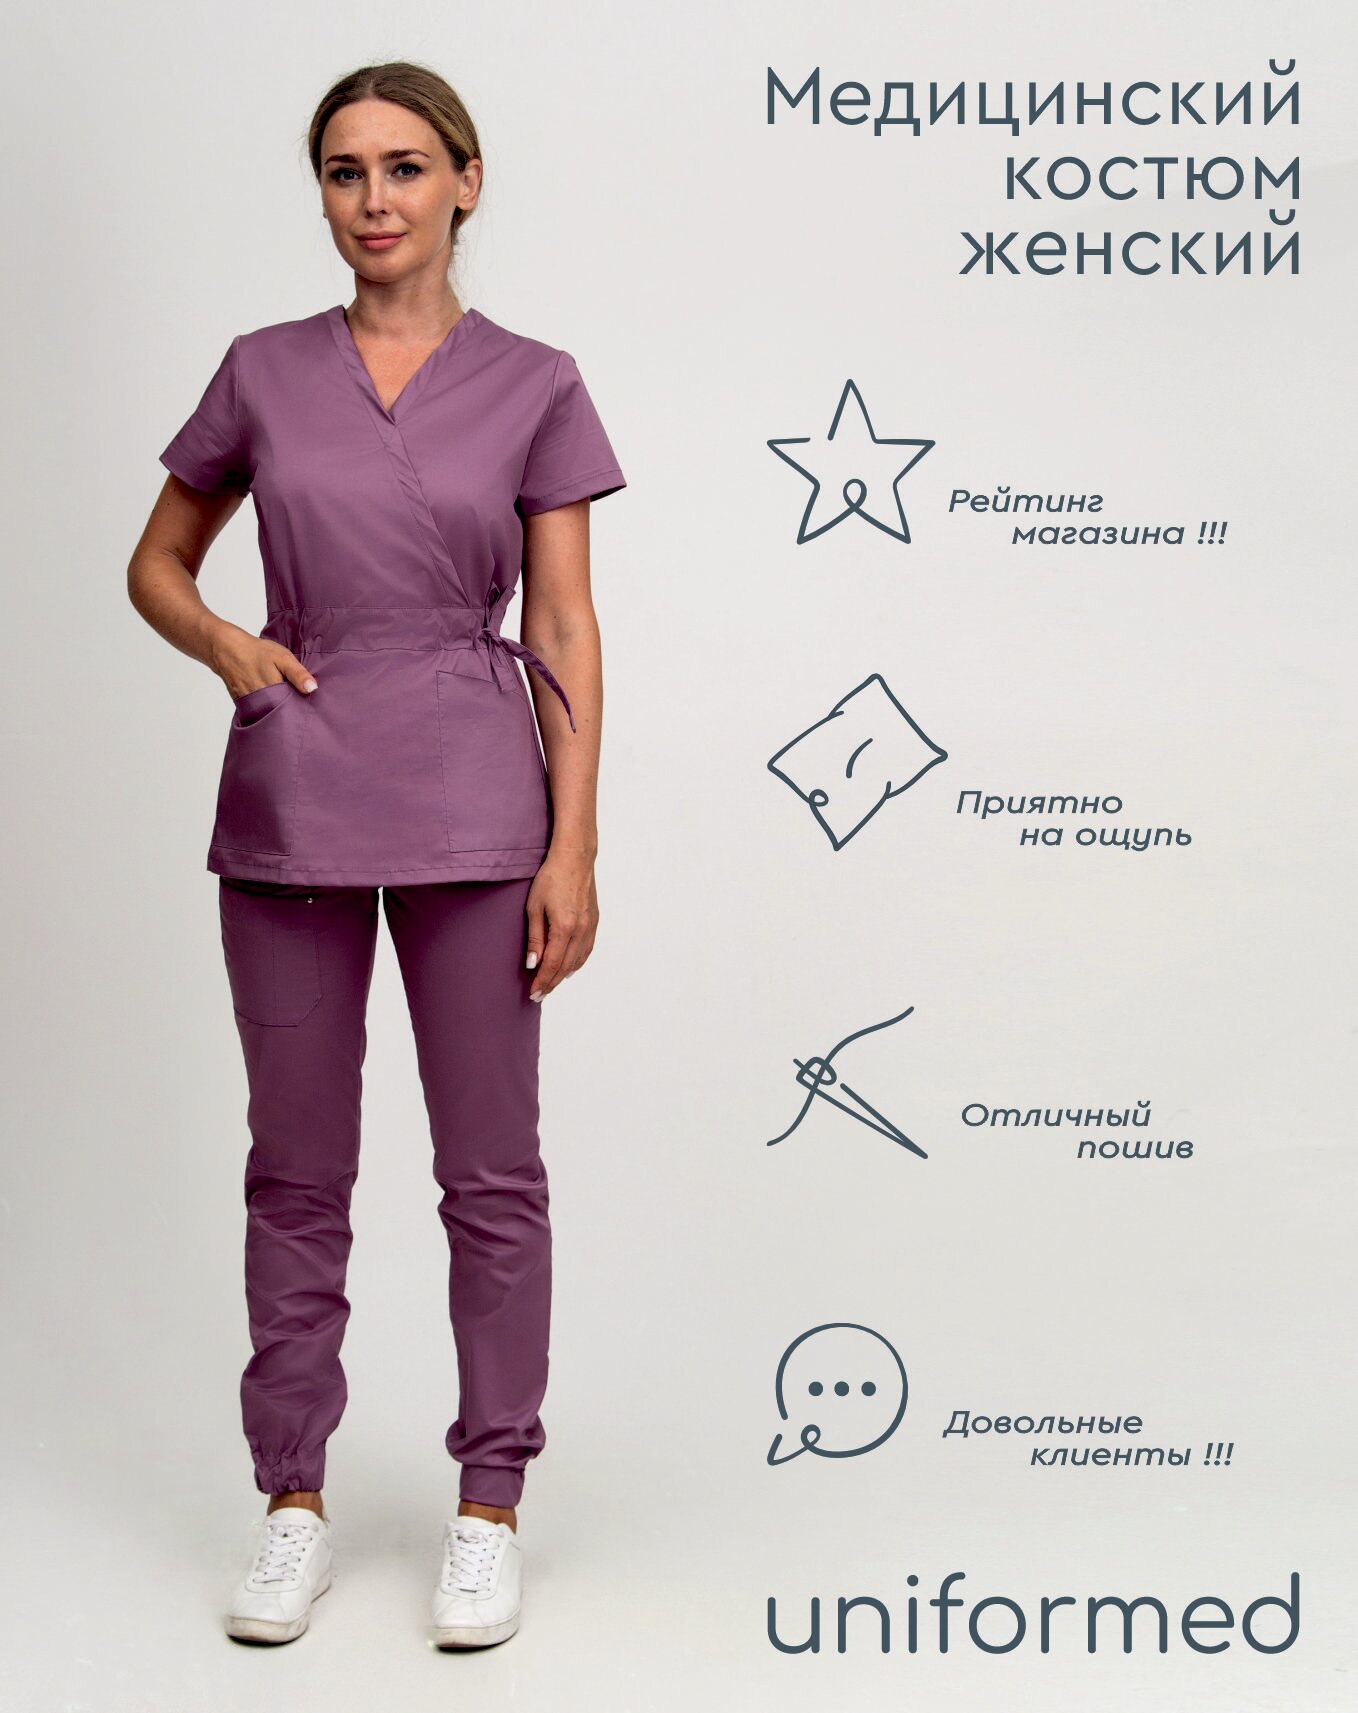 Медицинский женский костюм 386.4.9 Uniformed, ткань сатори стрейч, рукав короткий, цвет сиреневый, размер 50